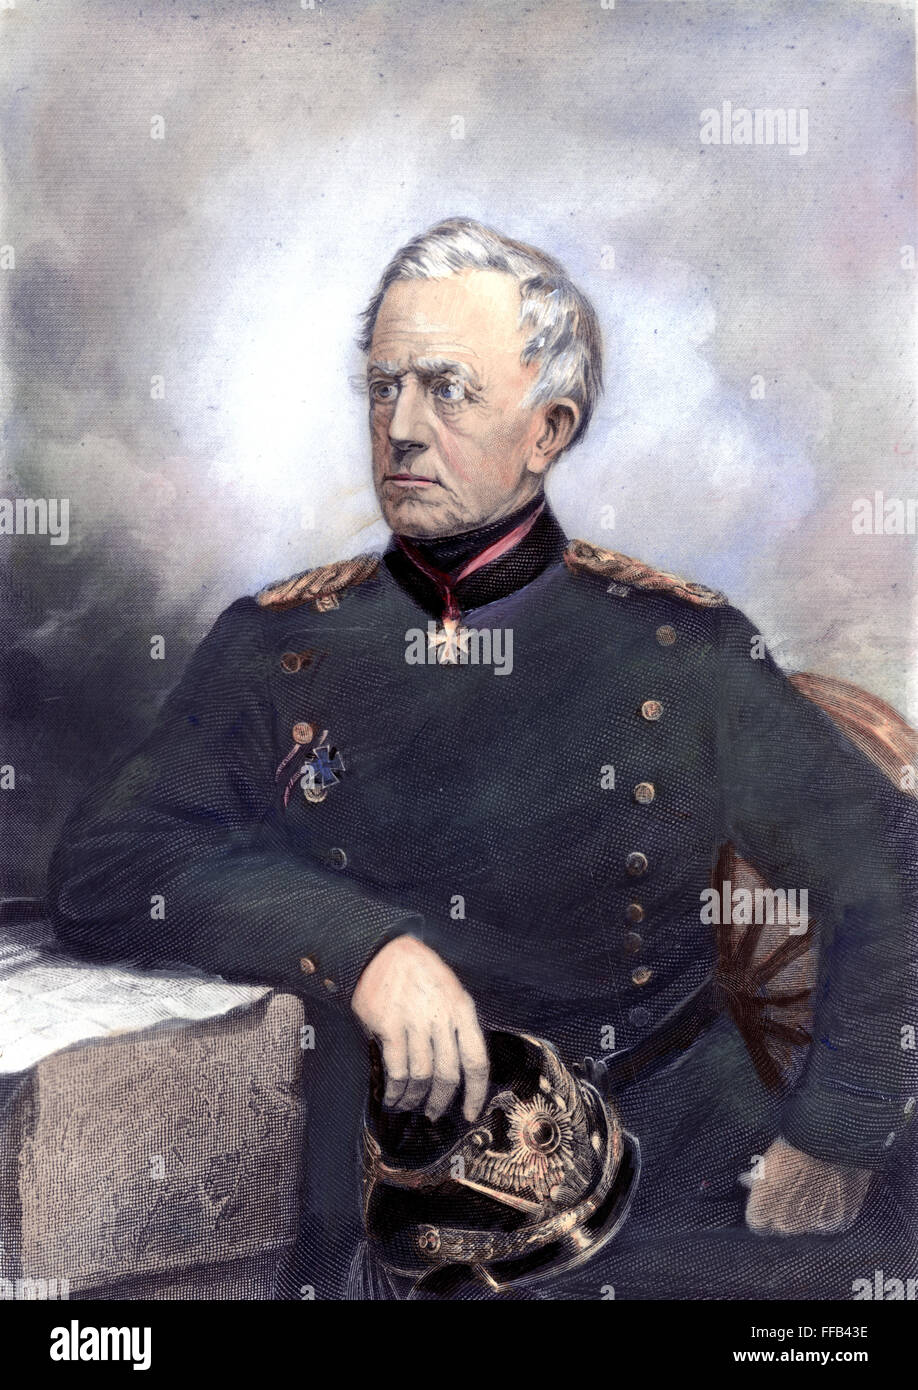 HELMUTH von MOLTKE /n(1800-1891). Helmuth Karl Bernhard von Moltke. Prussian soldier. Line and stipple engraving, c1870. Stock Photo